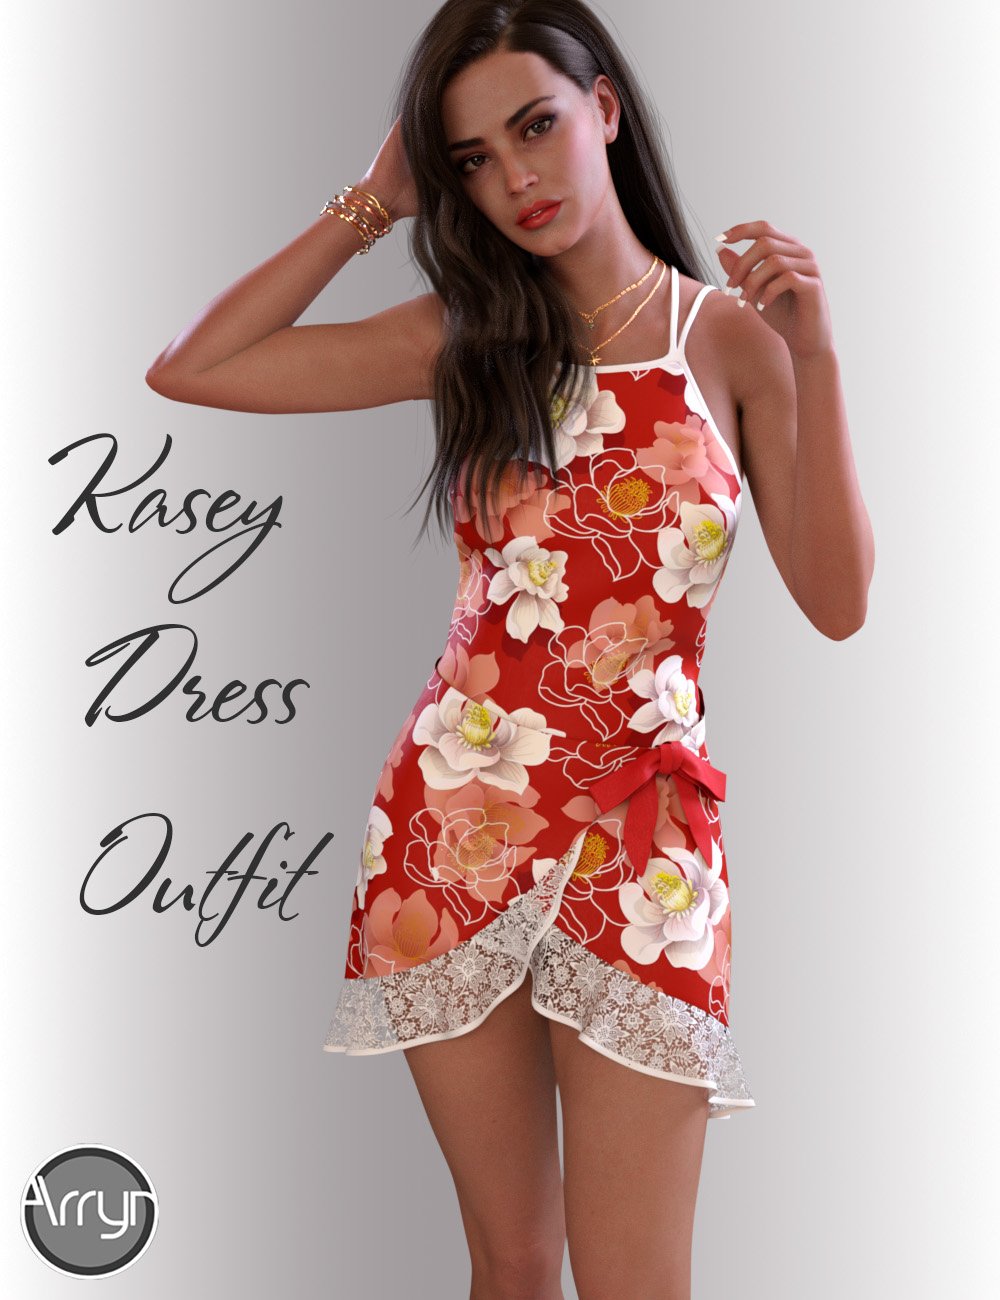 dForce Kasey Candy Dress for Genesis 8 Female(s) by: OnnelArryn, 3D Models by Daz 3D